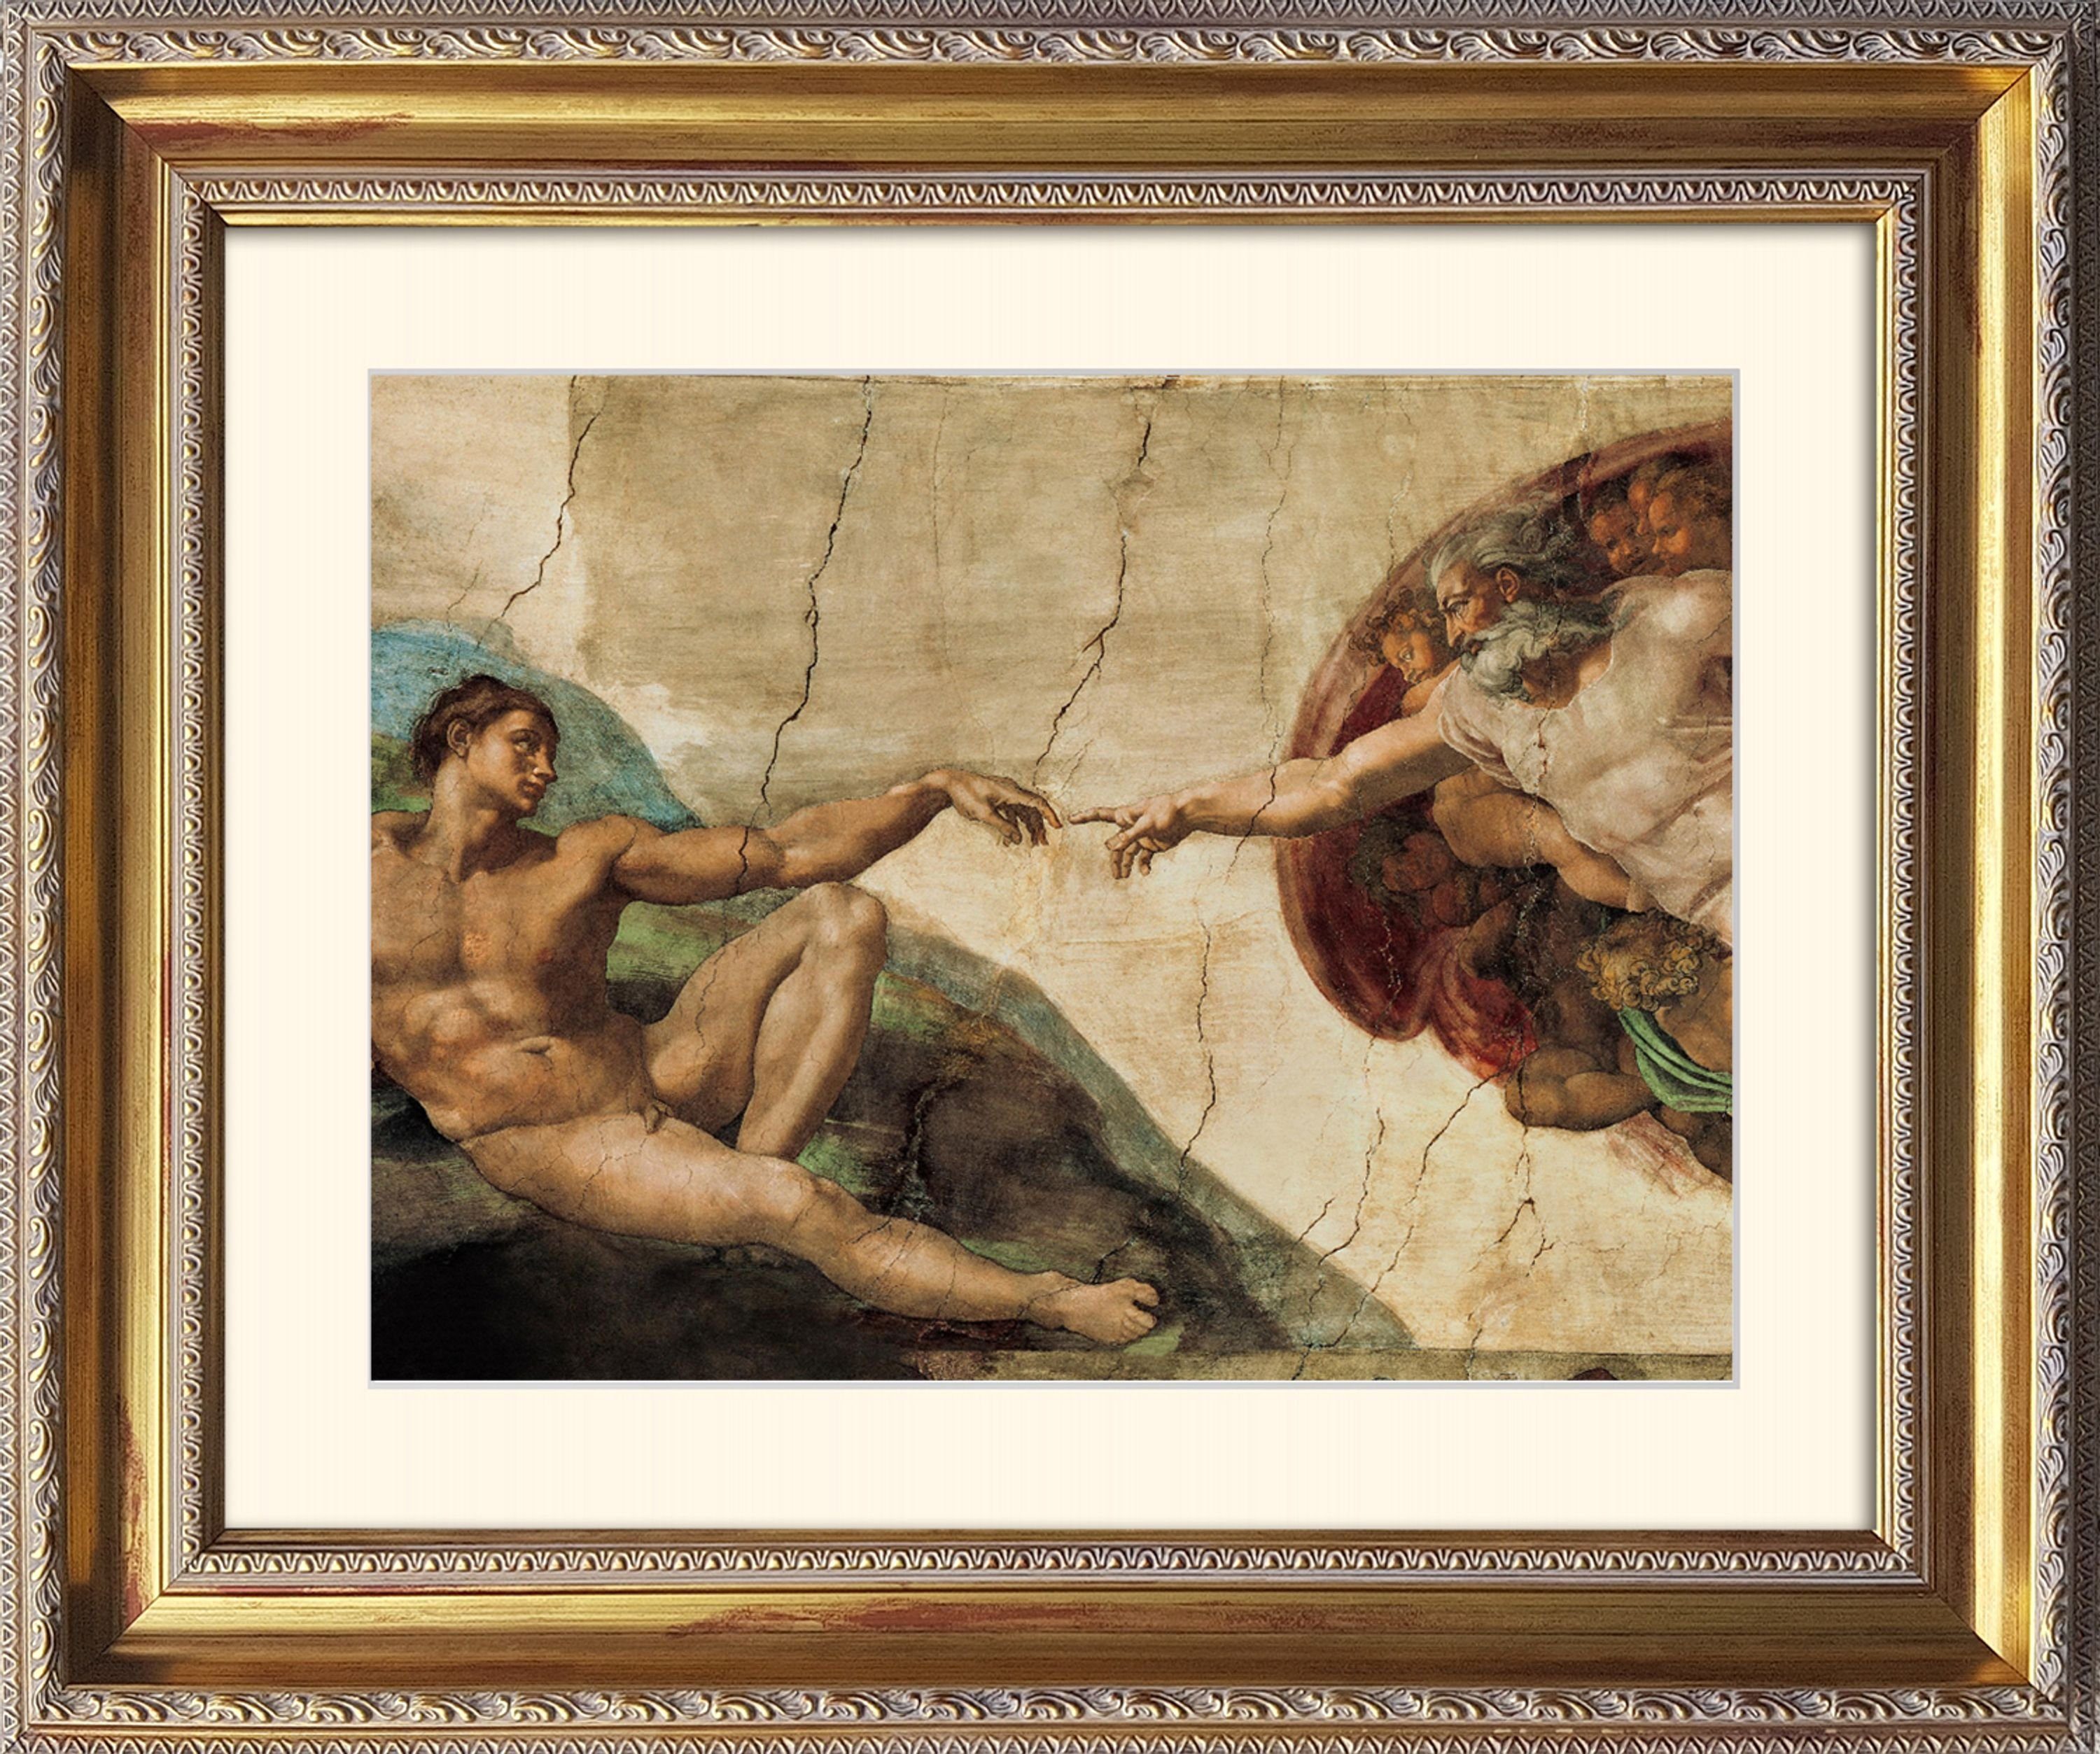 Michelangelo / gerahmt La artissimo Rahmen Michelangelo: Bild Hände 63x53cm mit Bild Adamo Poster / Creatione Wandbild, die mit / Rahmen